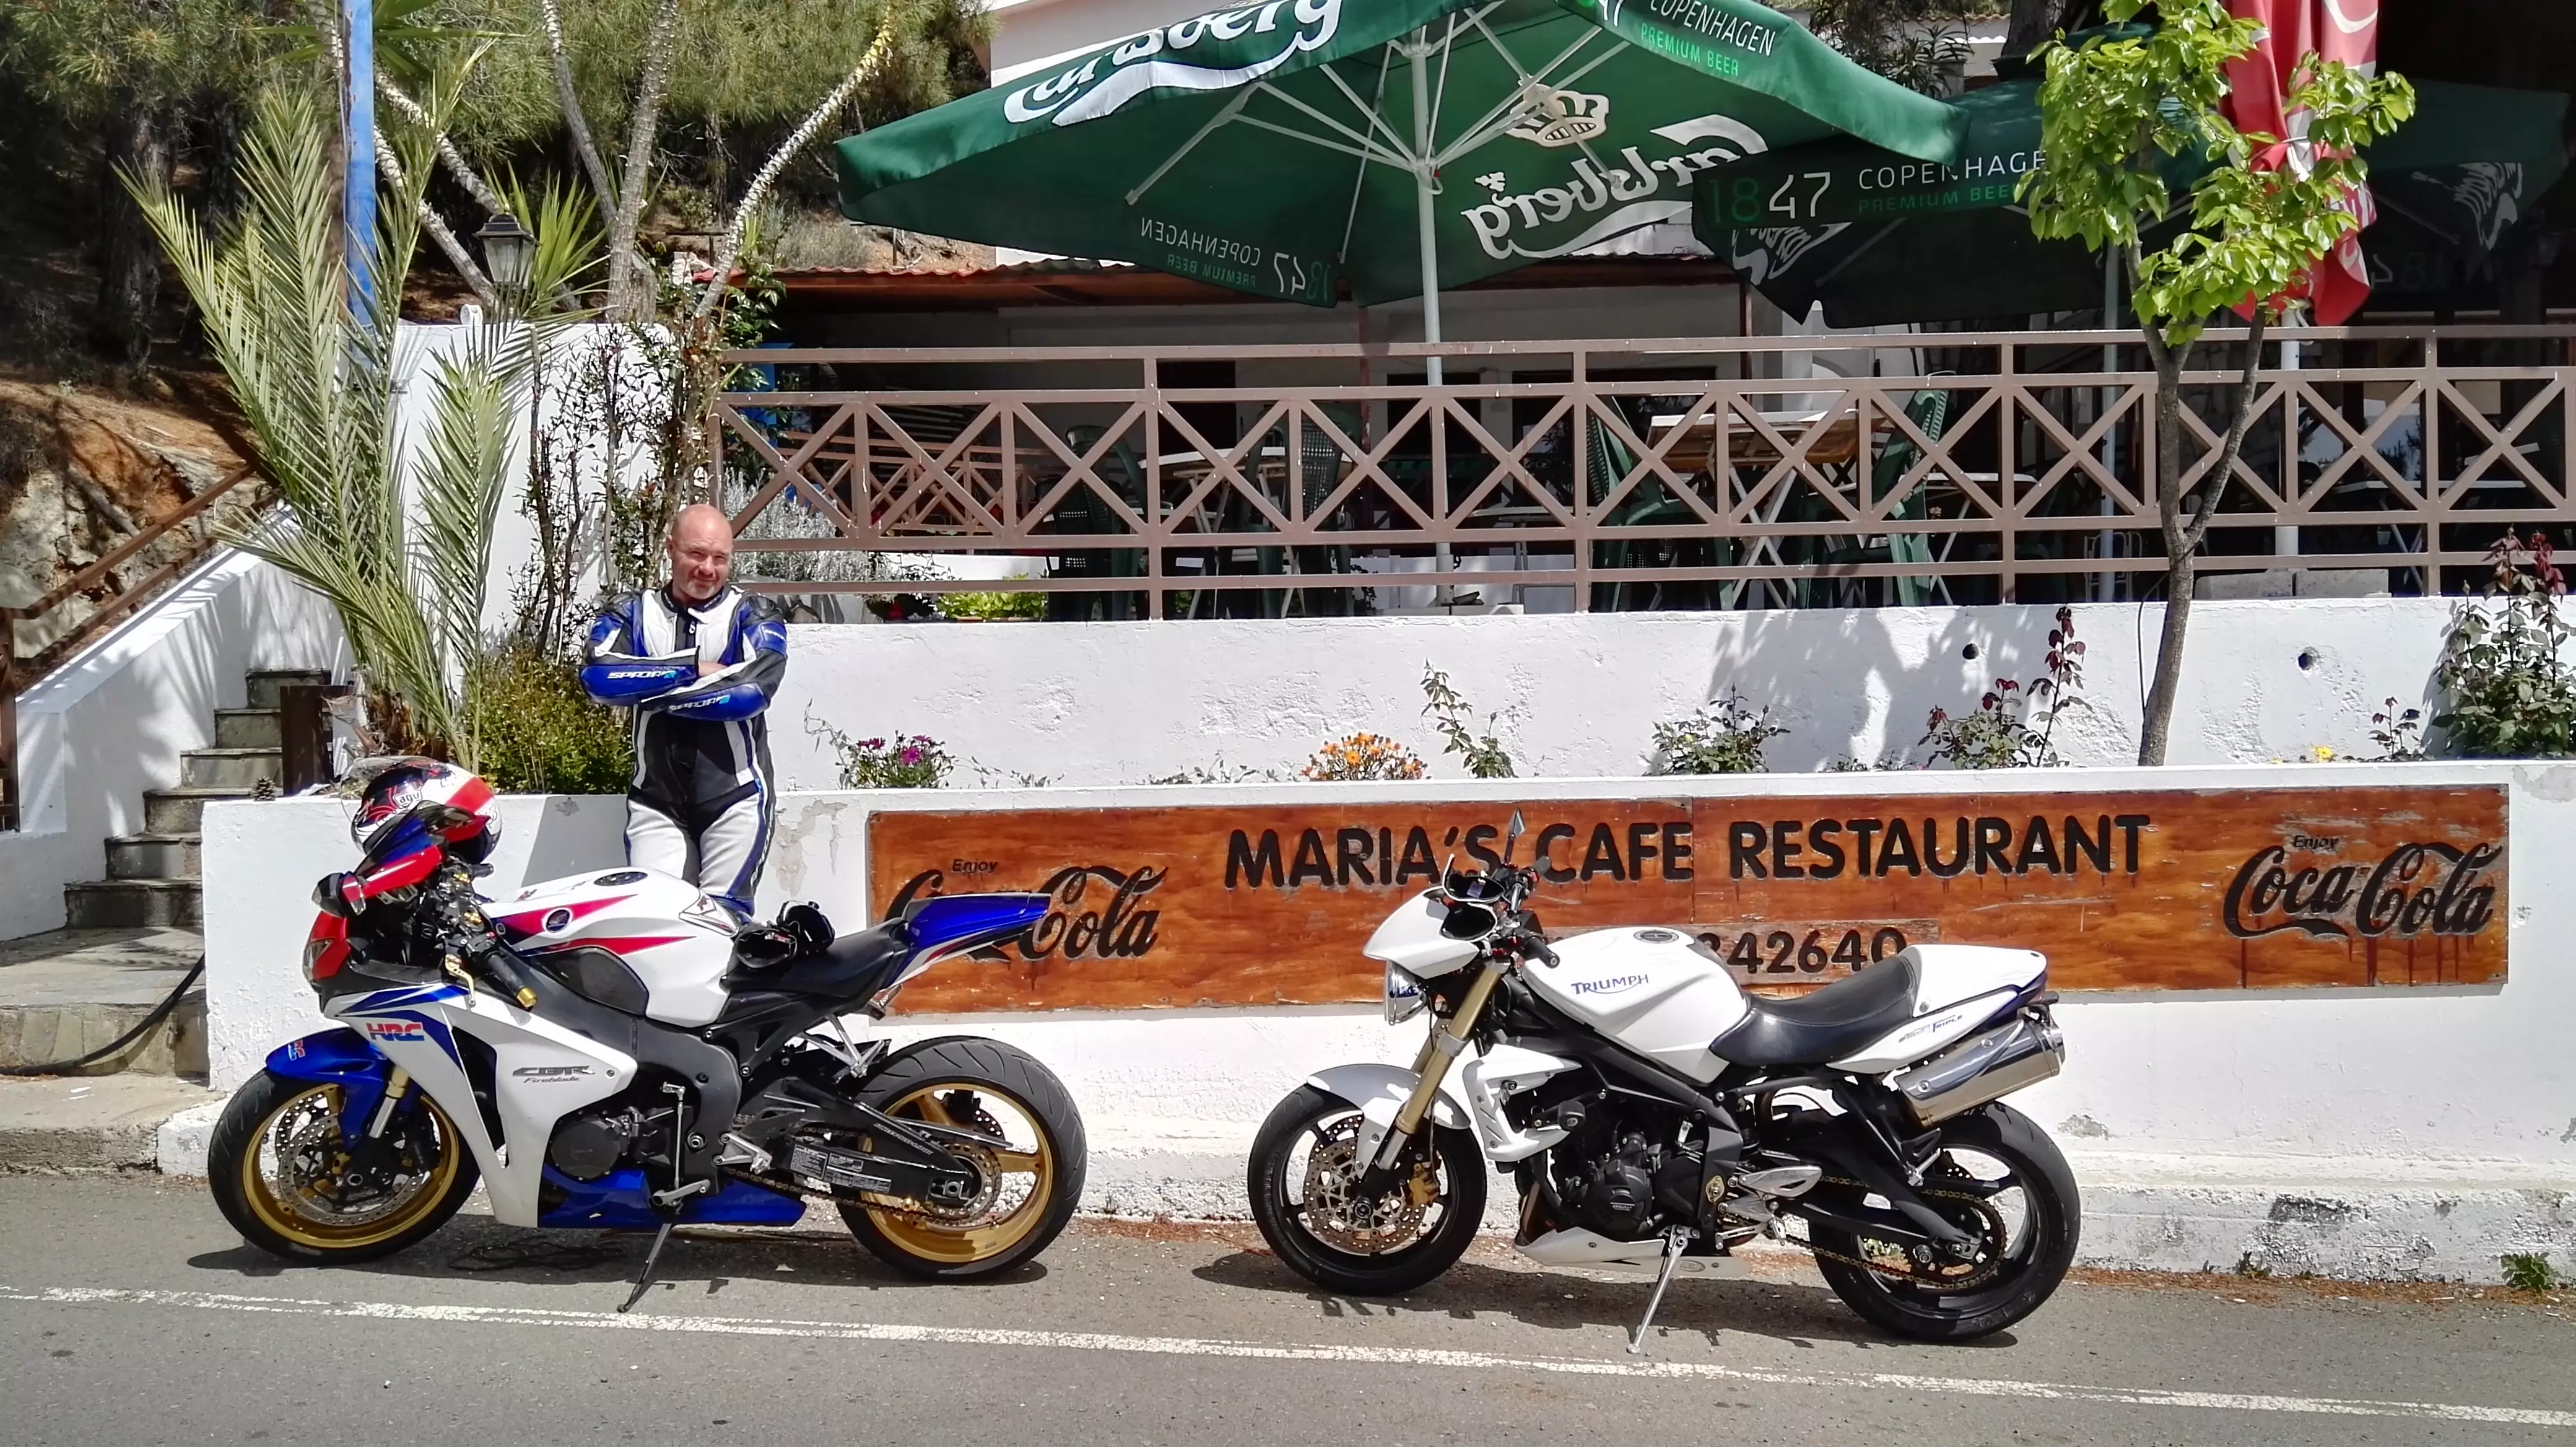 איאן סטרון וצמד האופנועים שענגו אותנו בקפריסין